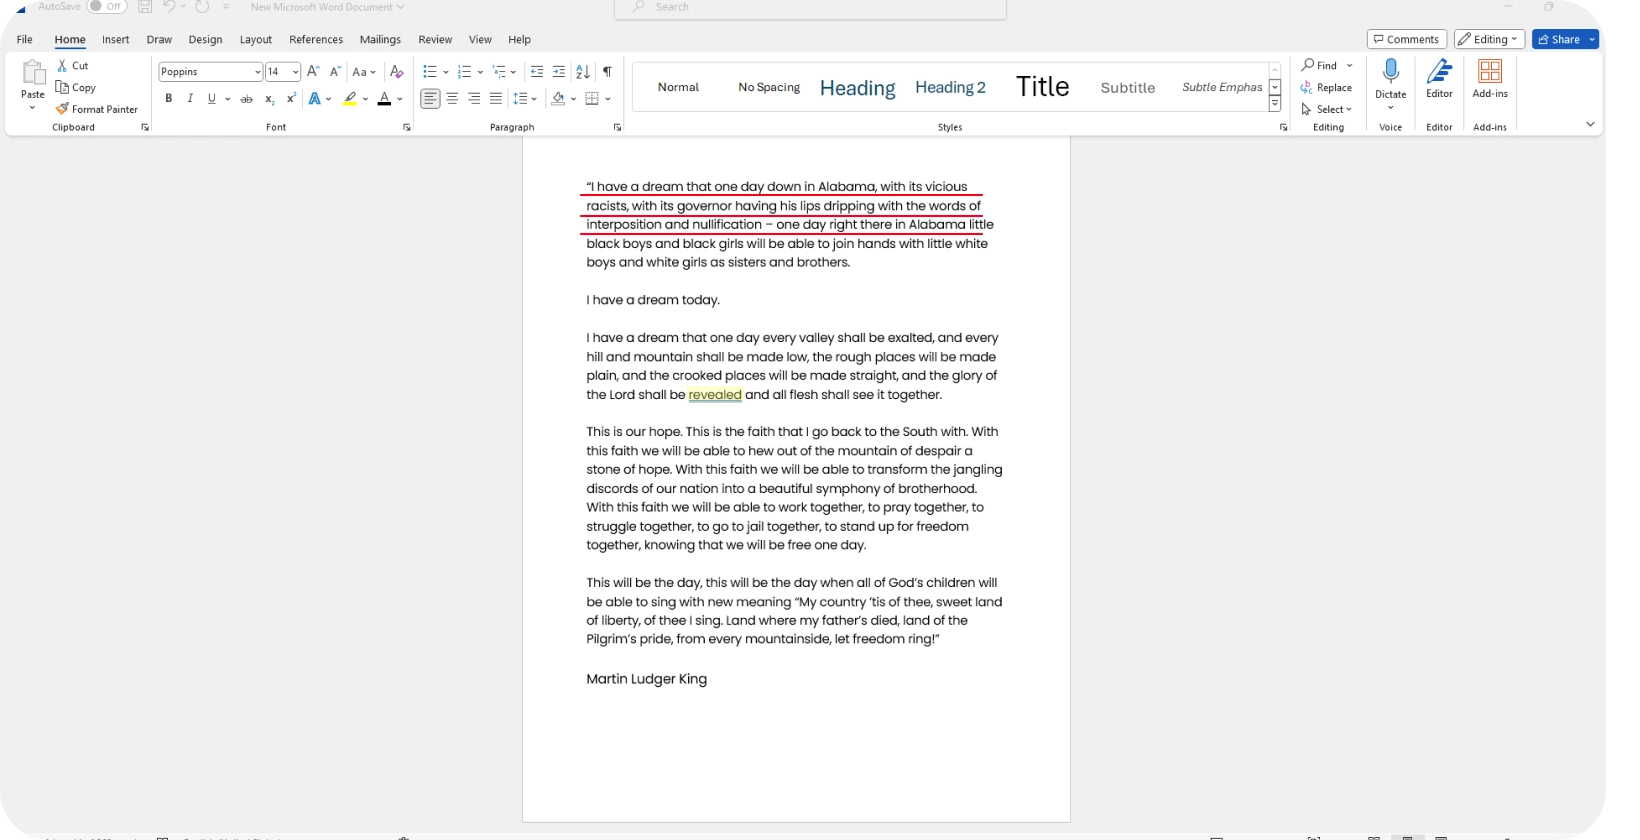 받아쓰기 기능의 효율성을 강조하여 음성 전사를 보여 주는 Microsoft Word 문서입니다.